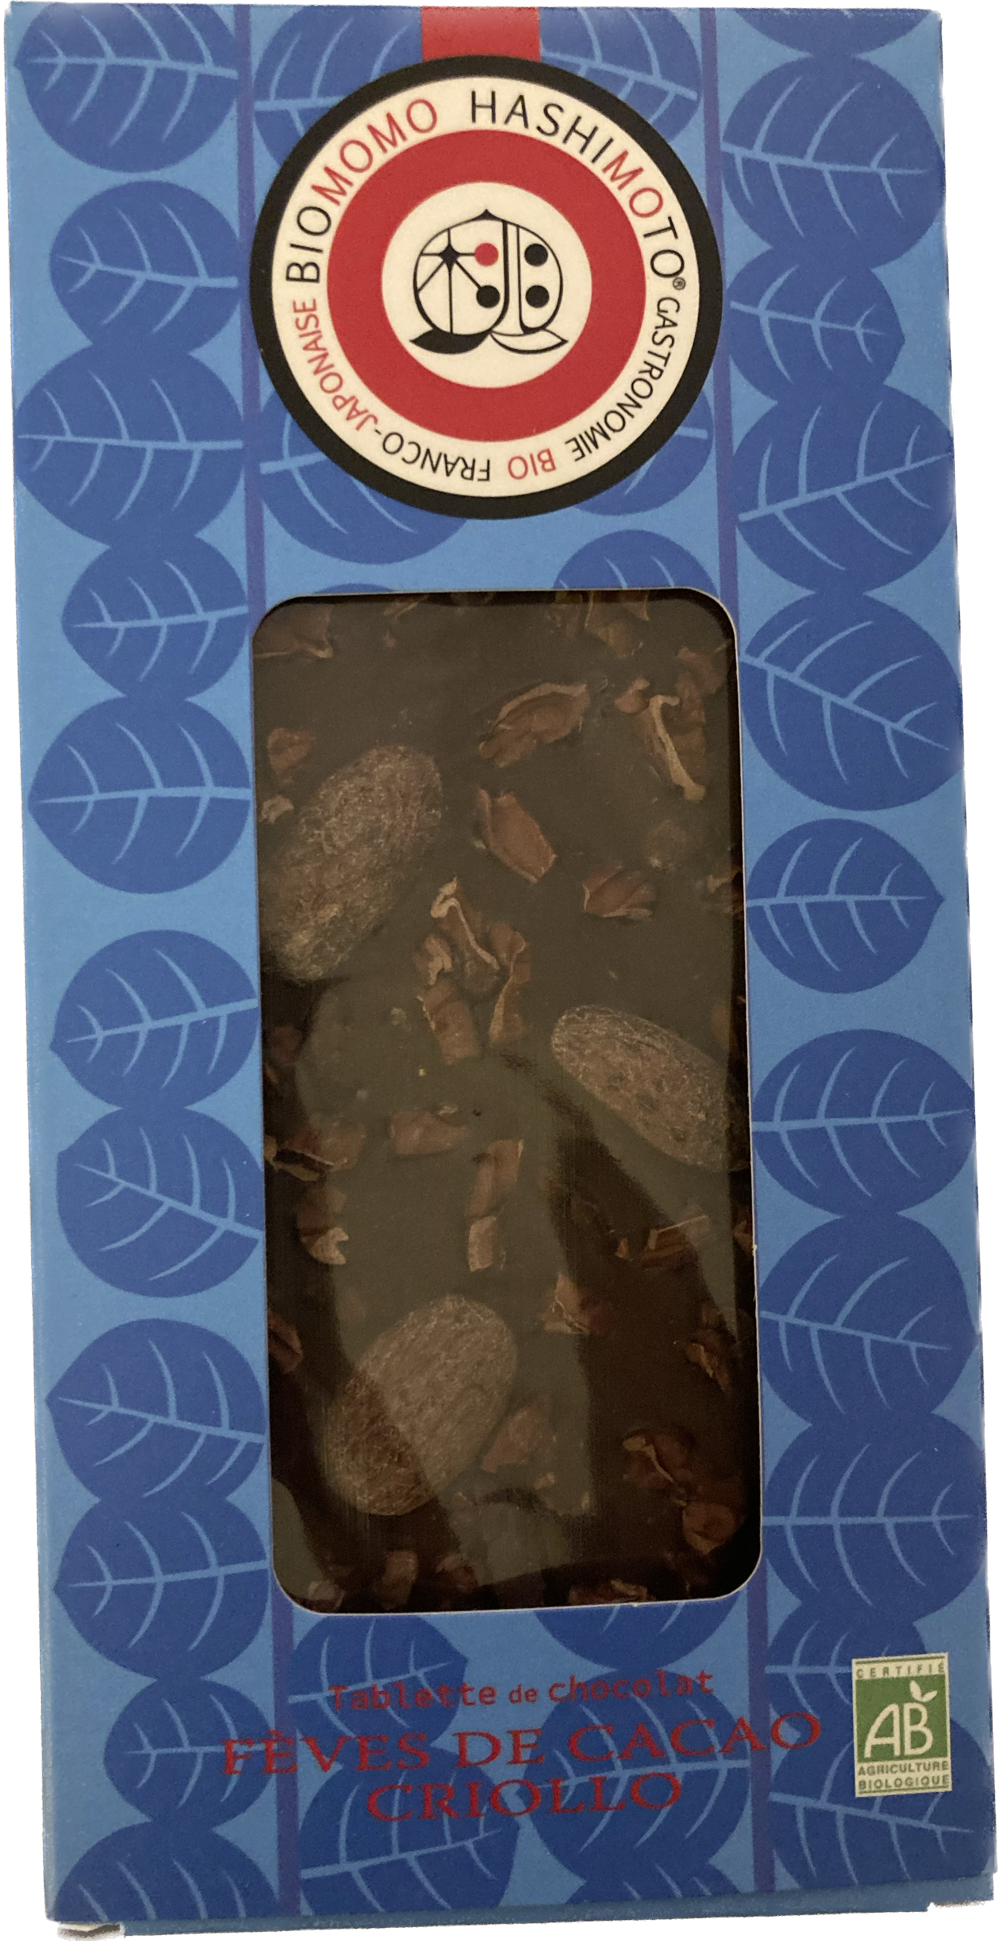 Tablette chocolat biologique Fèves de Cacao Criollo